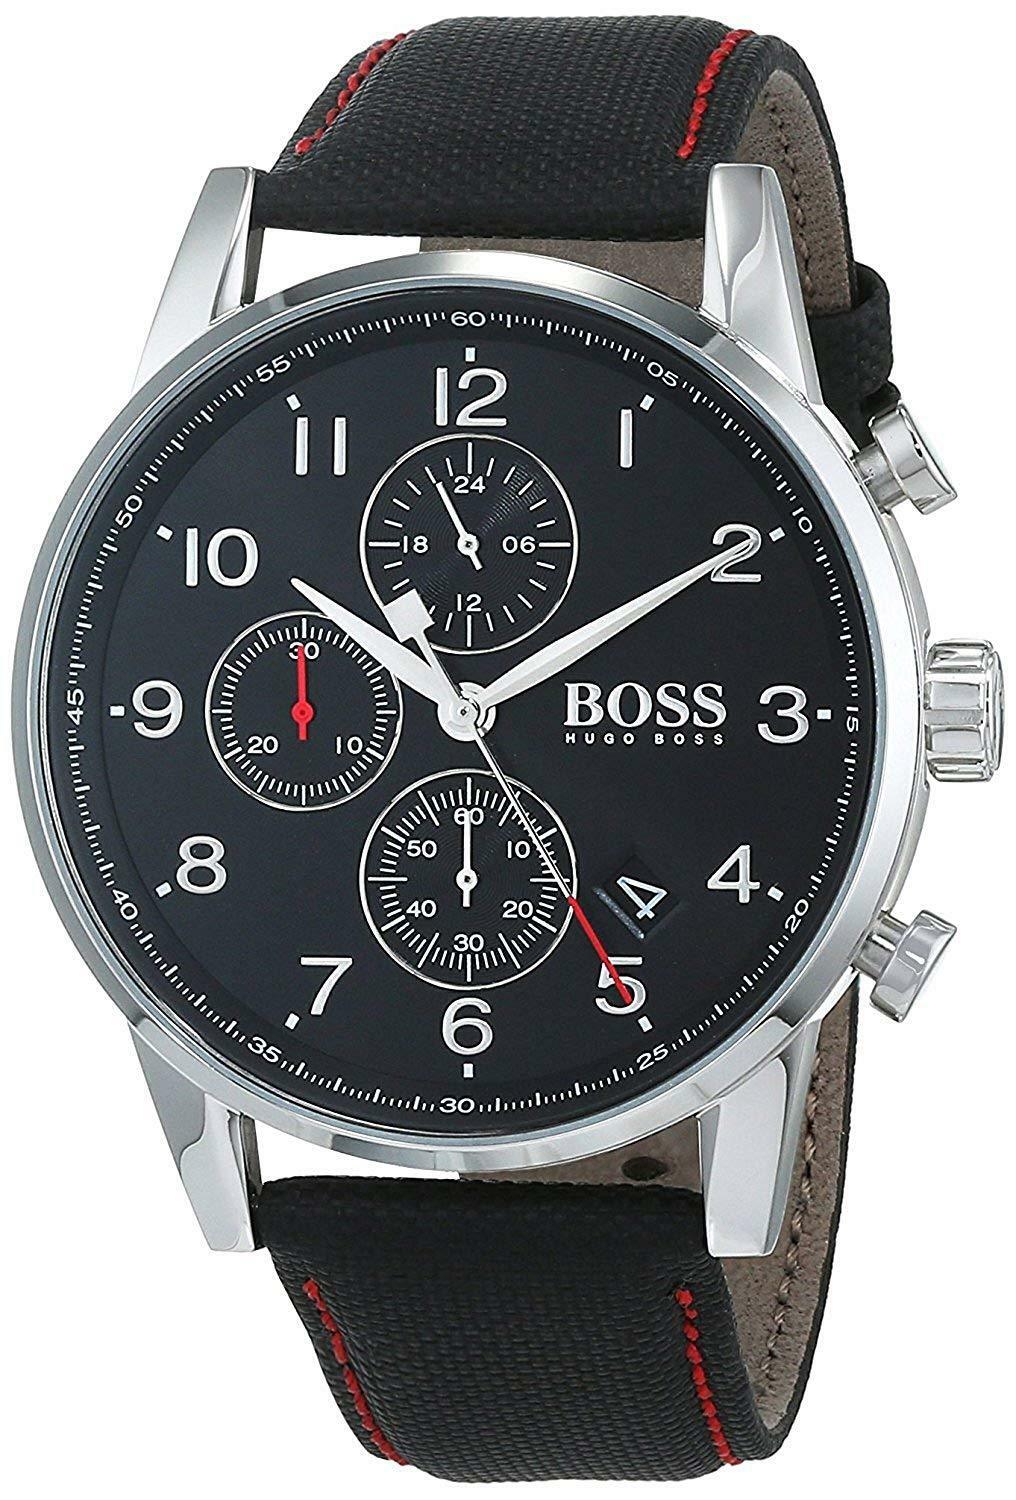 Hugo Boss Original 1513535 Men's Navigator Classic Black Calfskin Watch 44mm